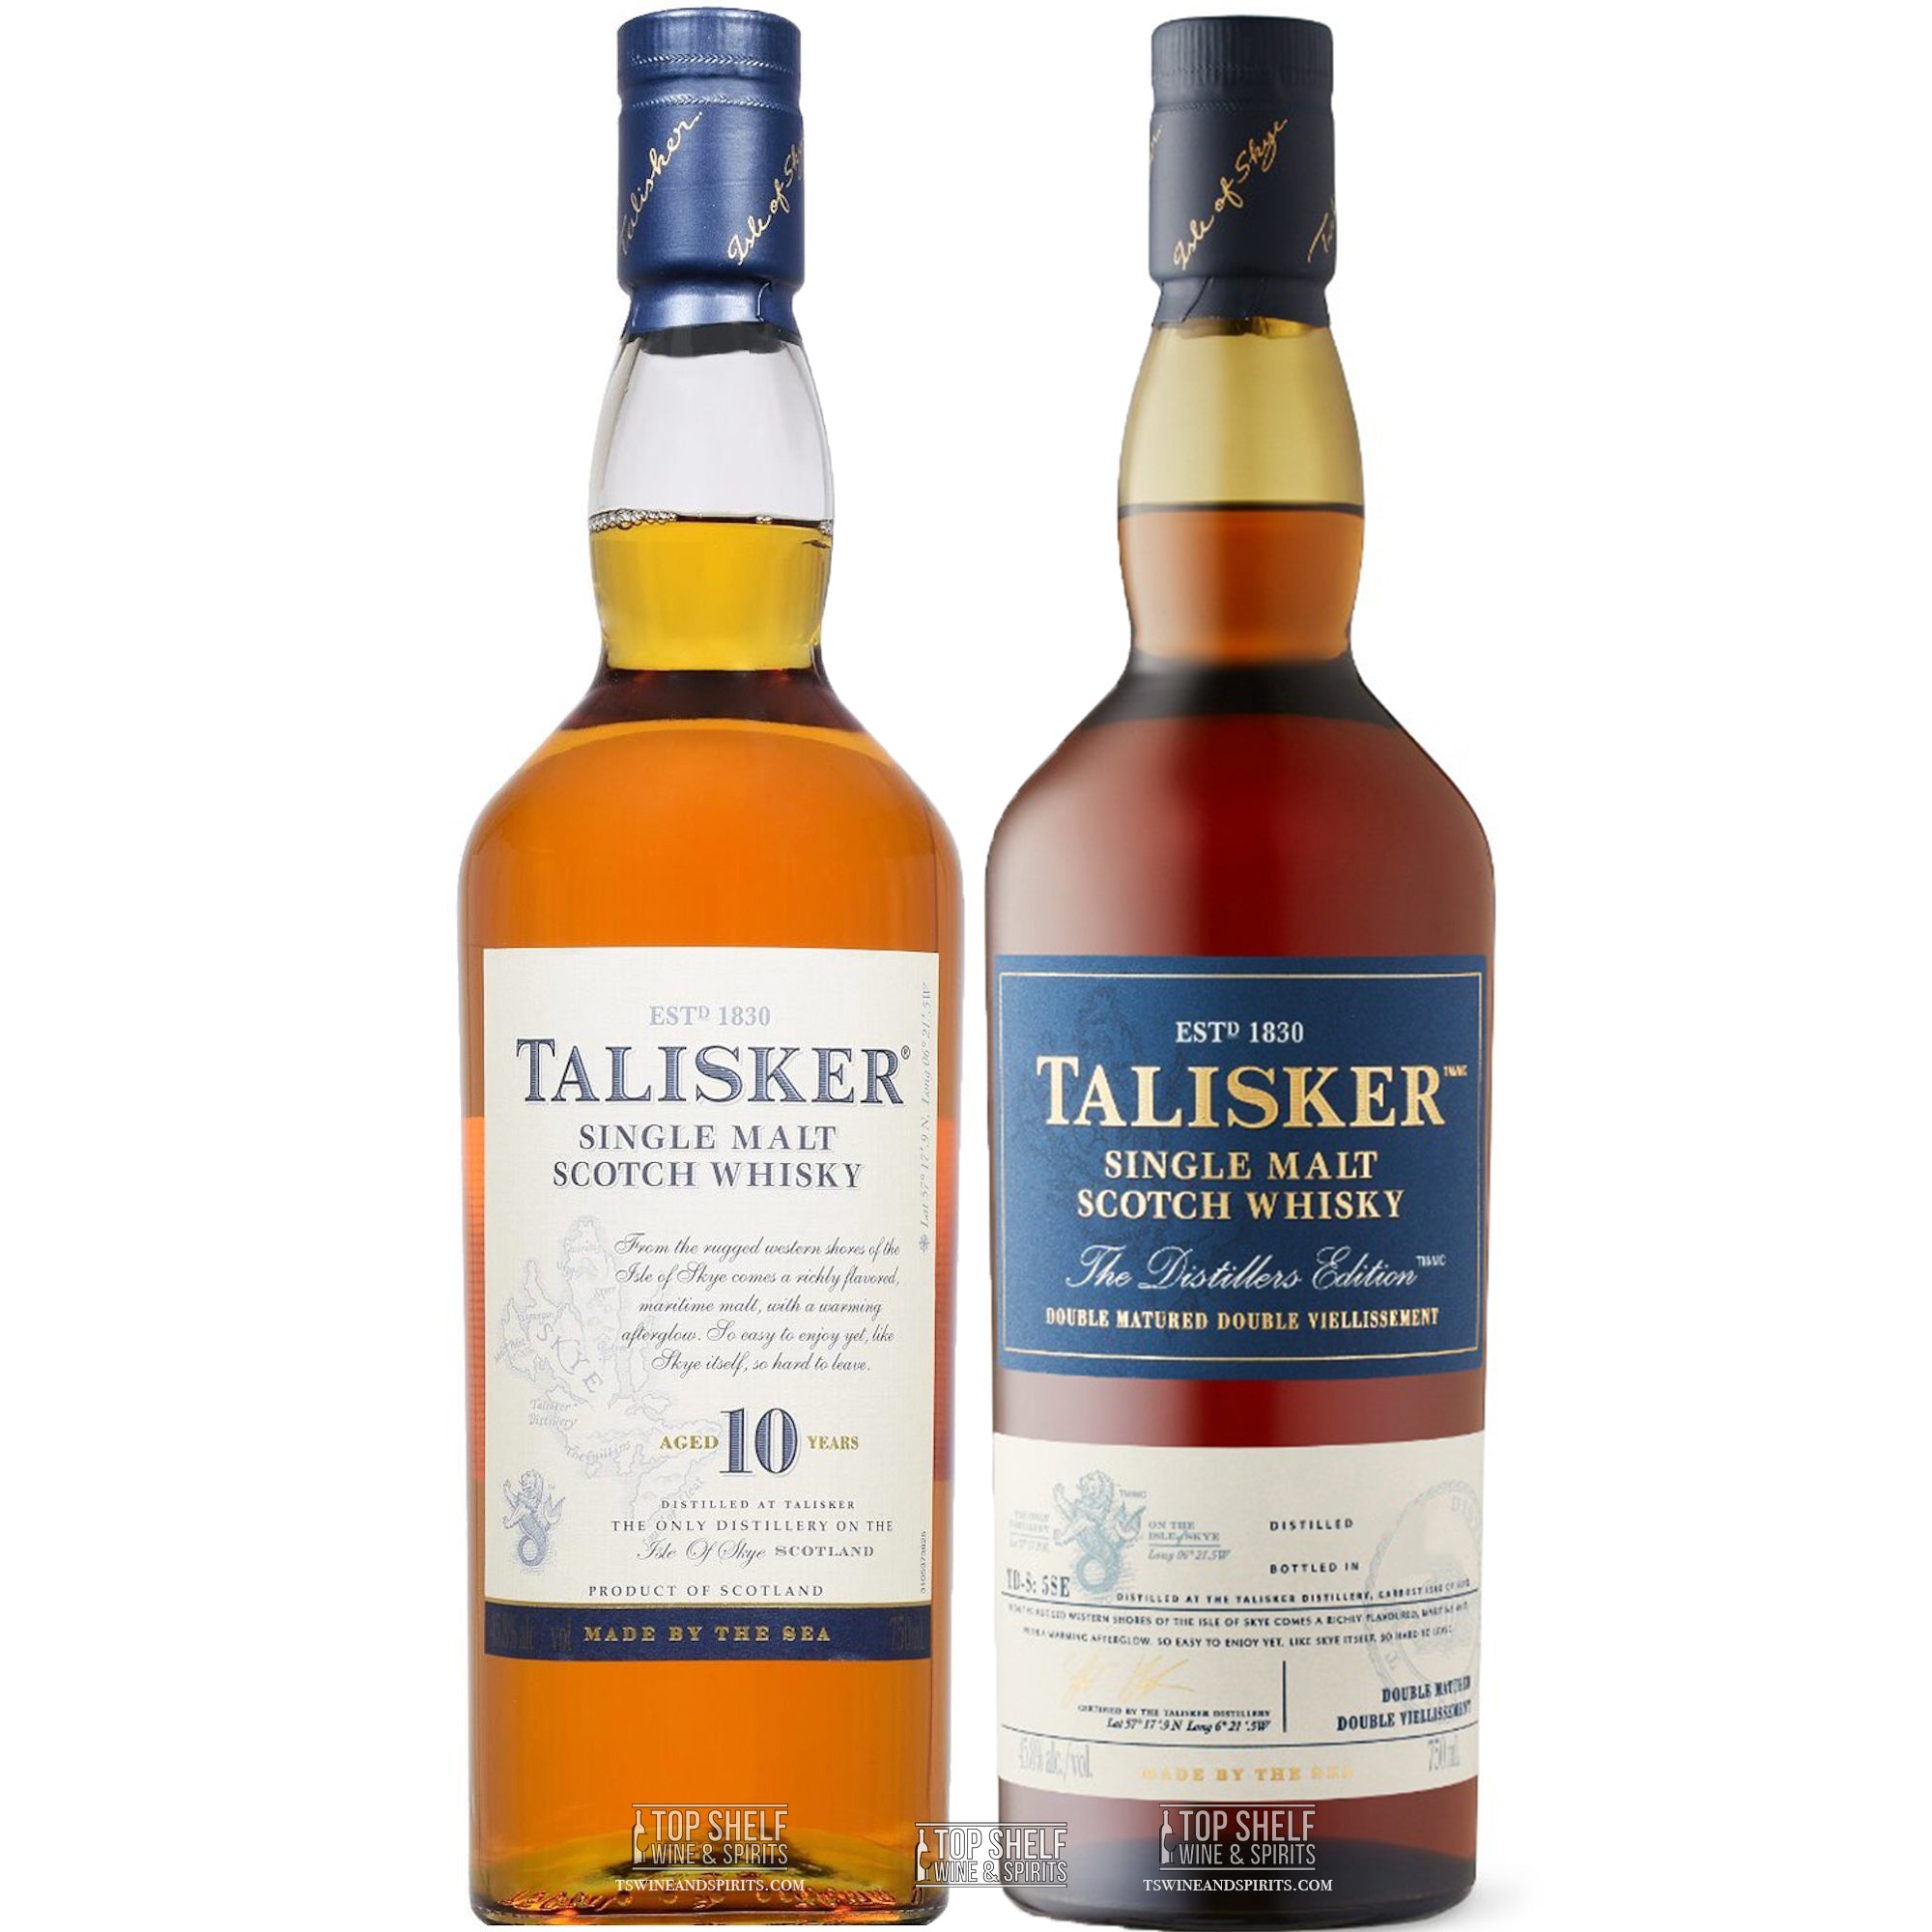 Talisker Single Malt Scotch Whisky Collection